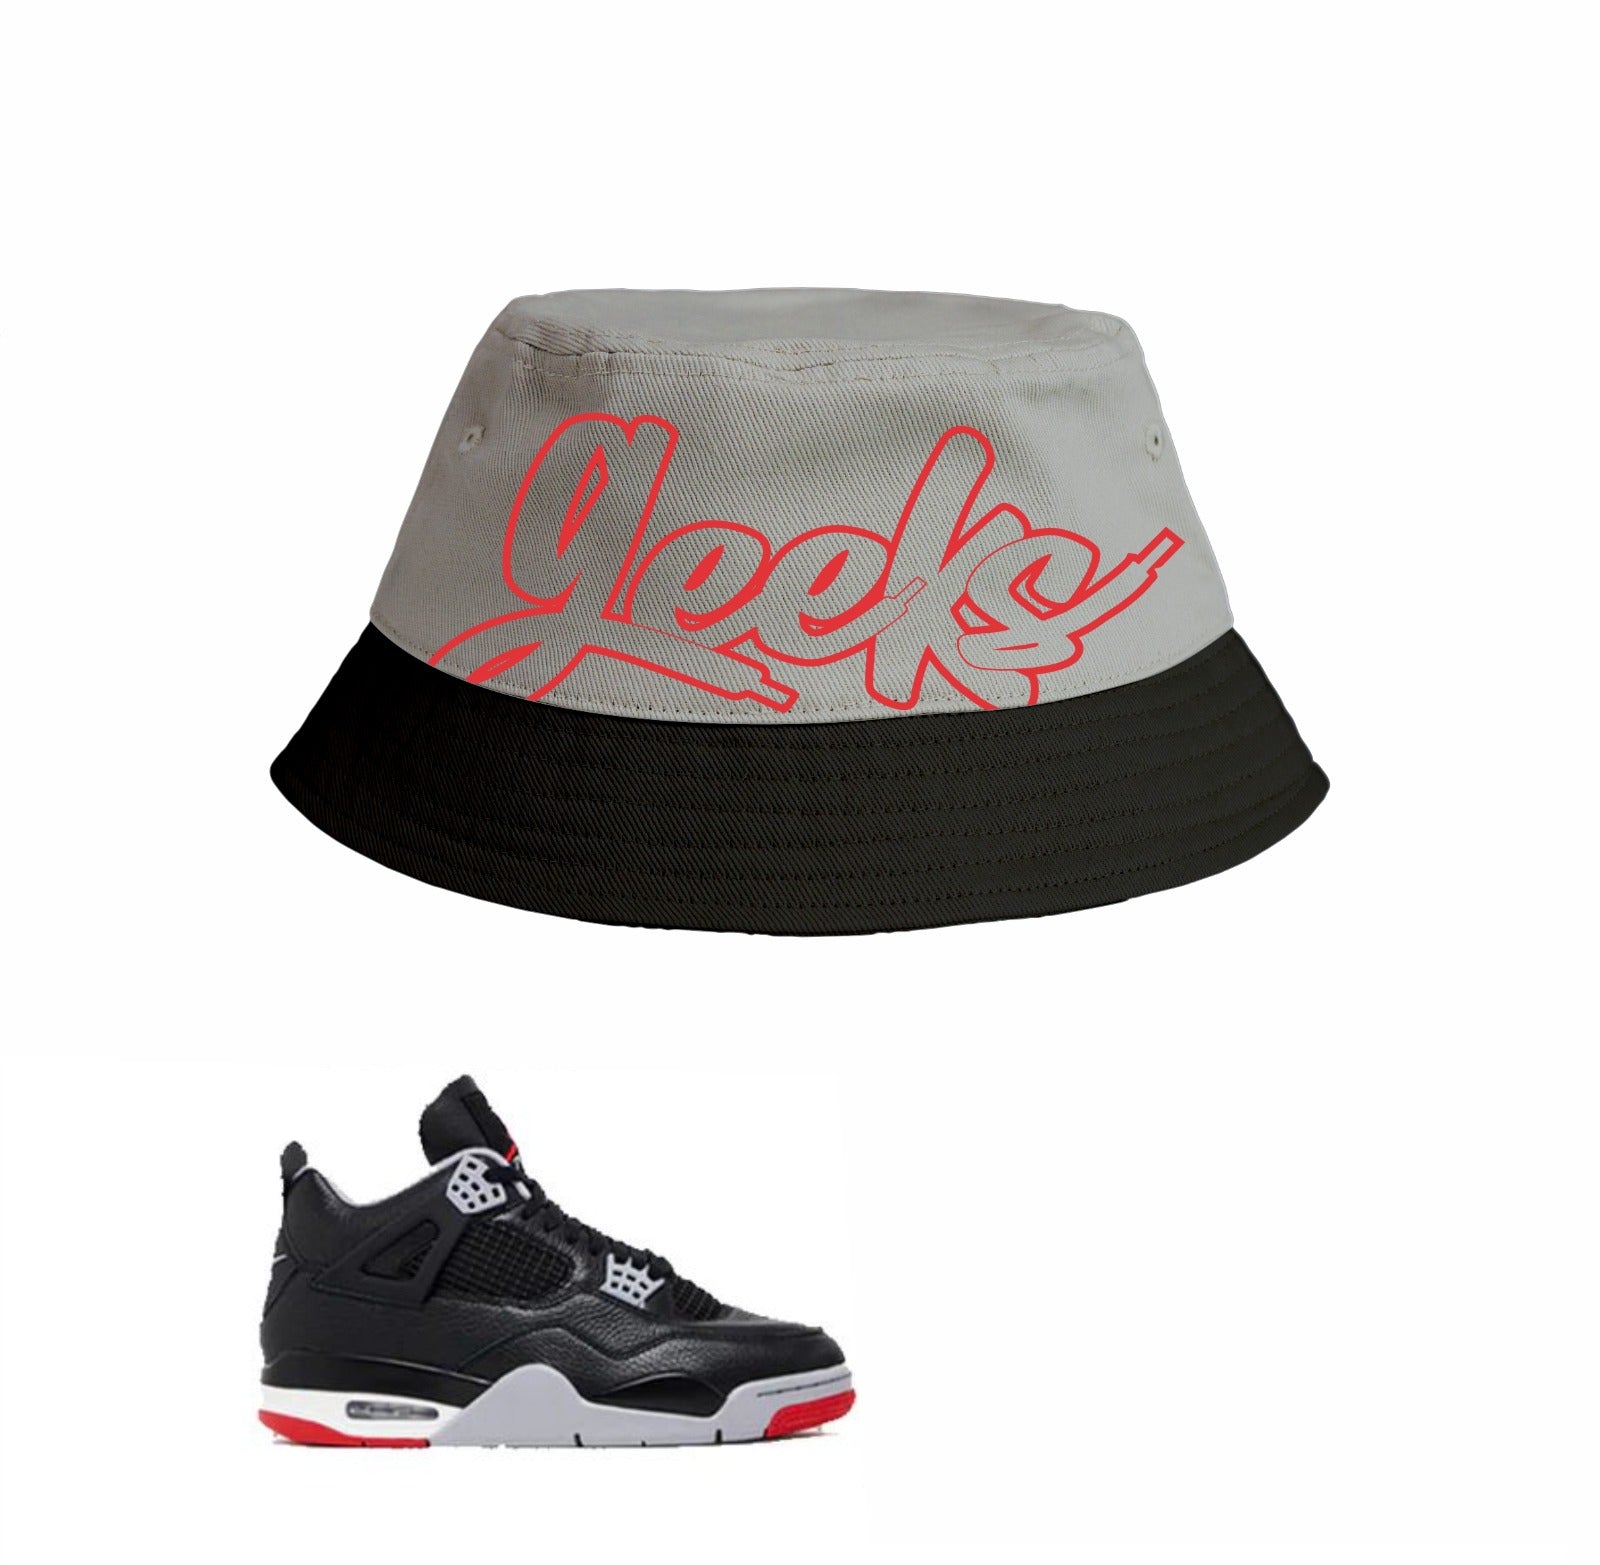 GEEKS Bucket Hat to match Retro Jordan 4 Reimagined sneakers